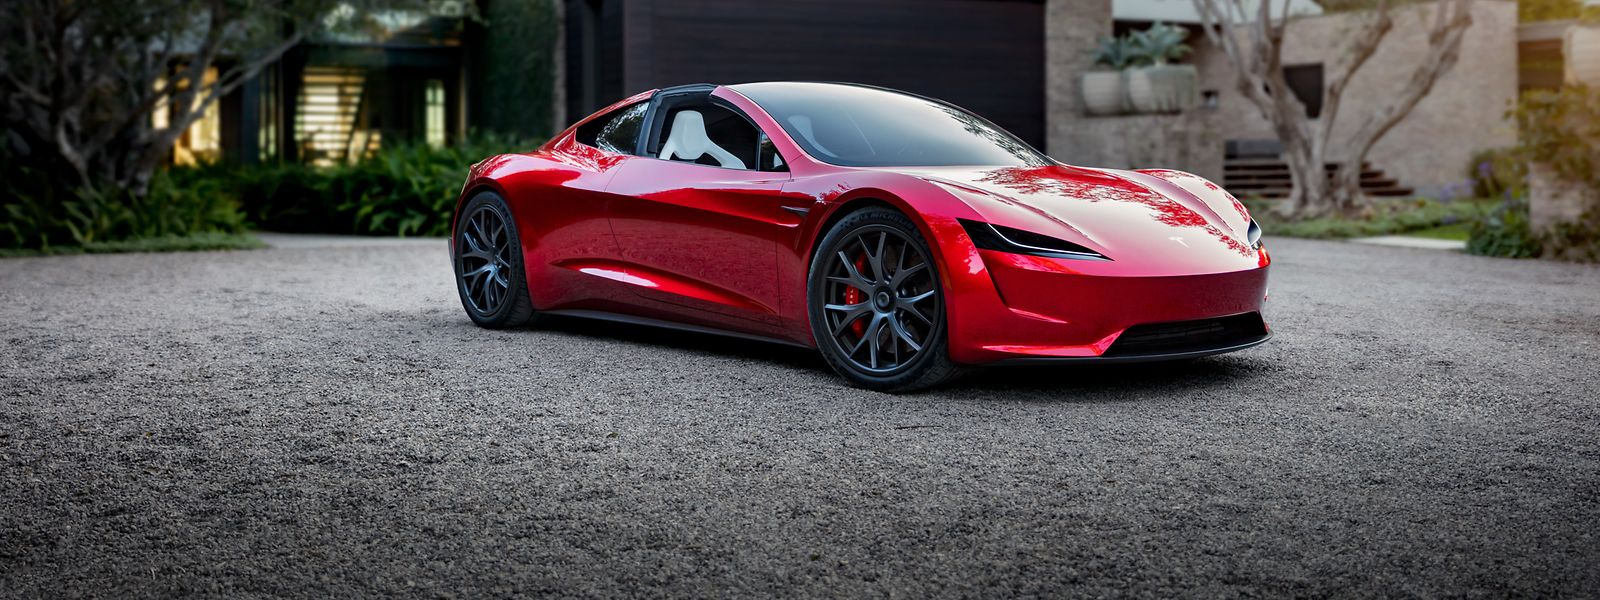 Vier Sitzplätze und ein Plus an Frischluft: Tesla will mit dem neuen Roadster einen Supersportwagen auf den Markt bringen.